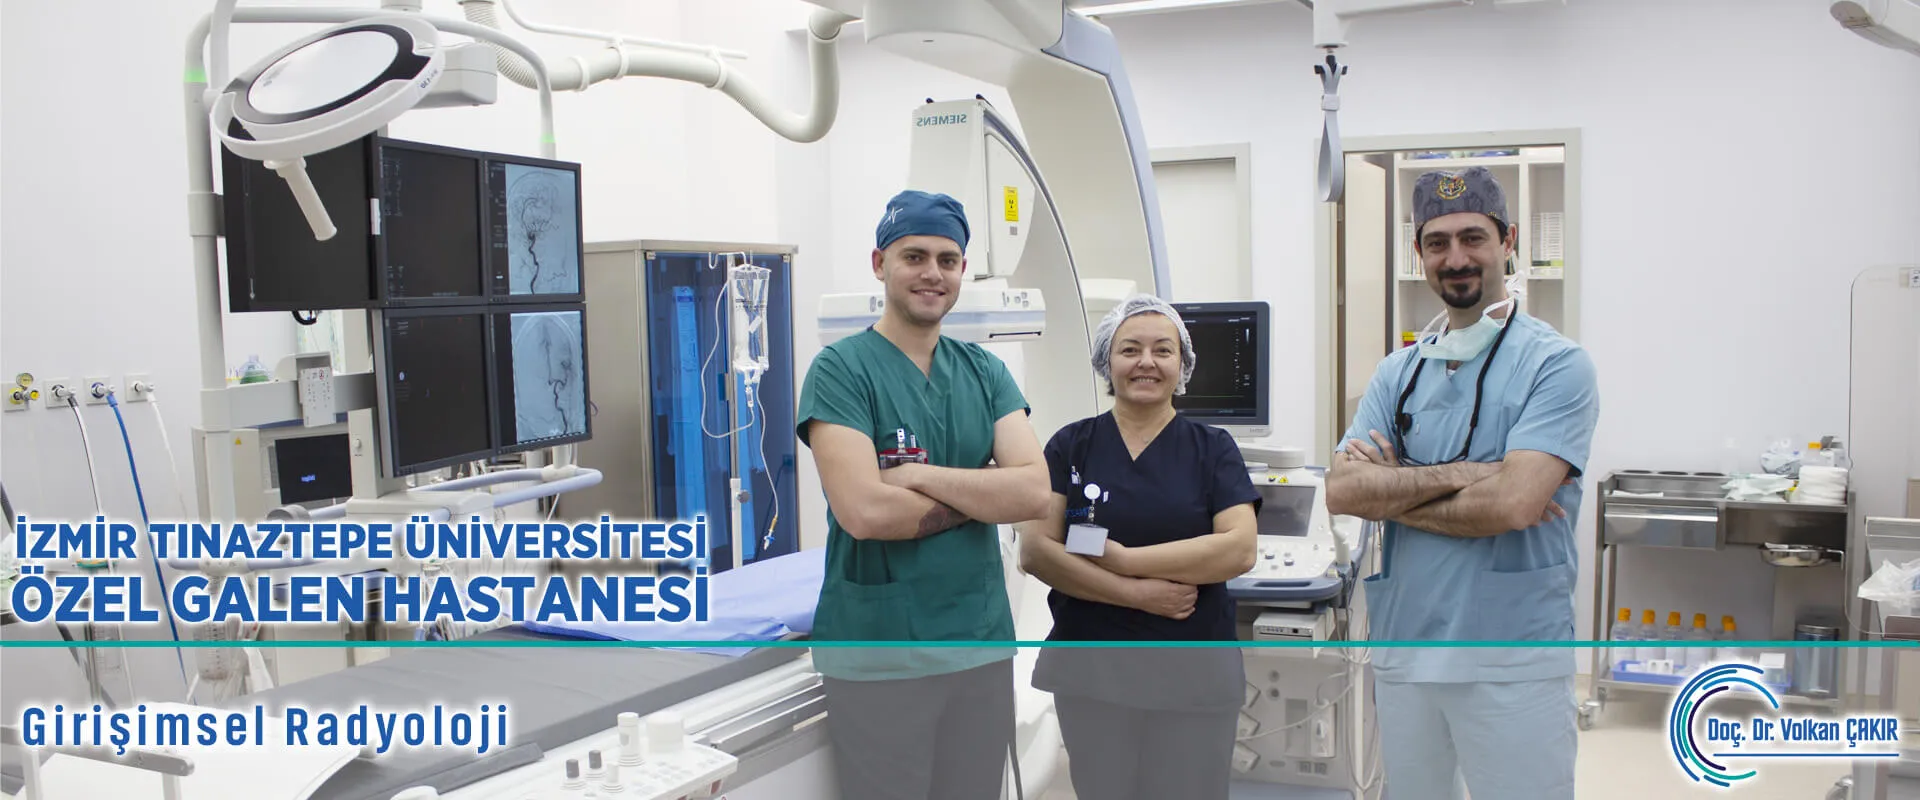 İzmir Tınaztepe Üniversitesi Özel Galen Hastanesi Girişimsel Radyoloji Bölümü